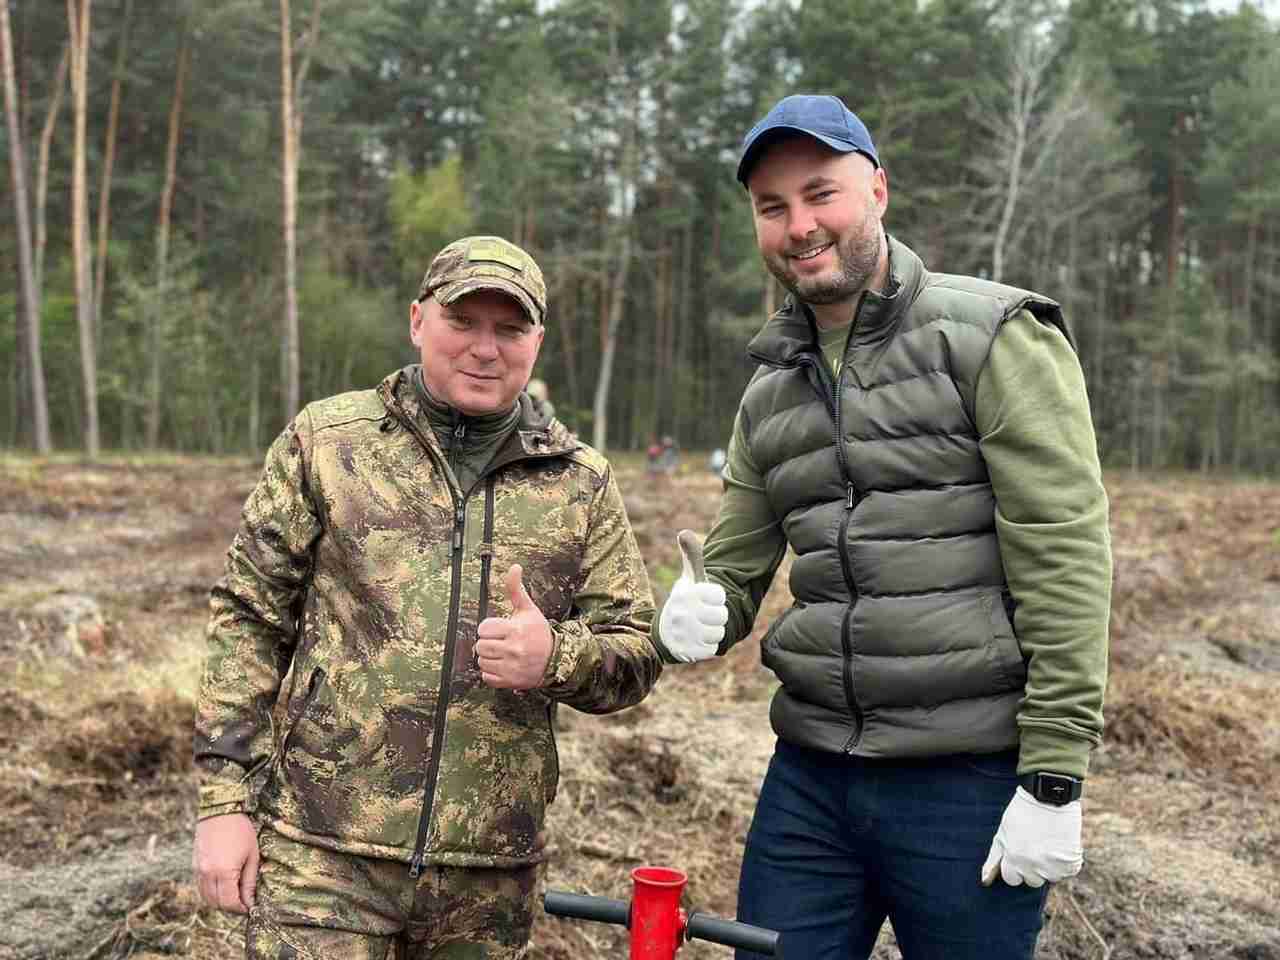 Львівська область взяла участь в масштабній благодійній акції висадки дерев (ФОТО)